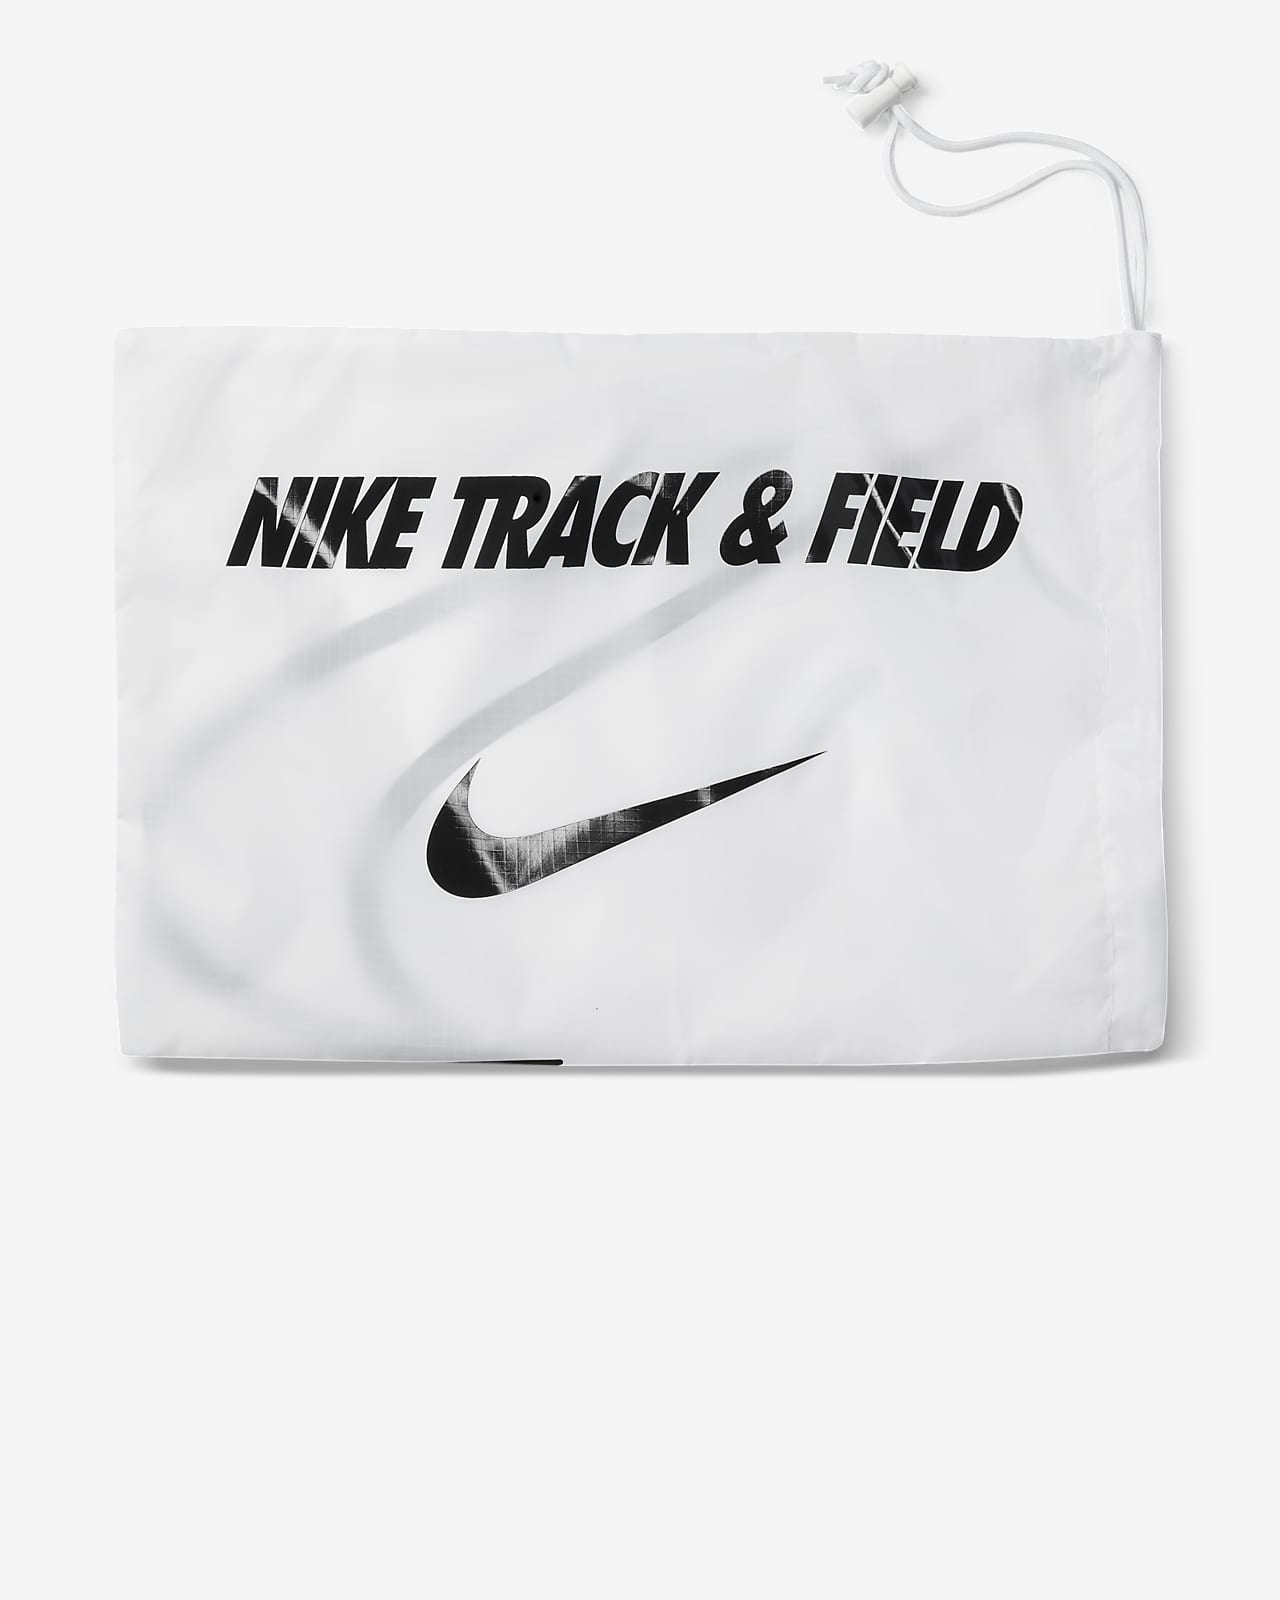 Nike公式 ナイキ ズーム ローテーショナル 6 トラックアンドフィールド スローイングシューズ オンラインストア 通販サイト